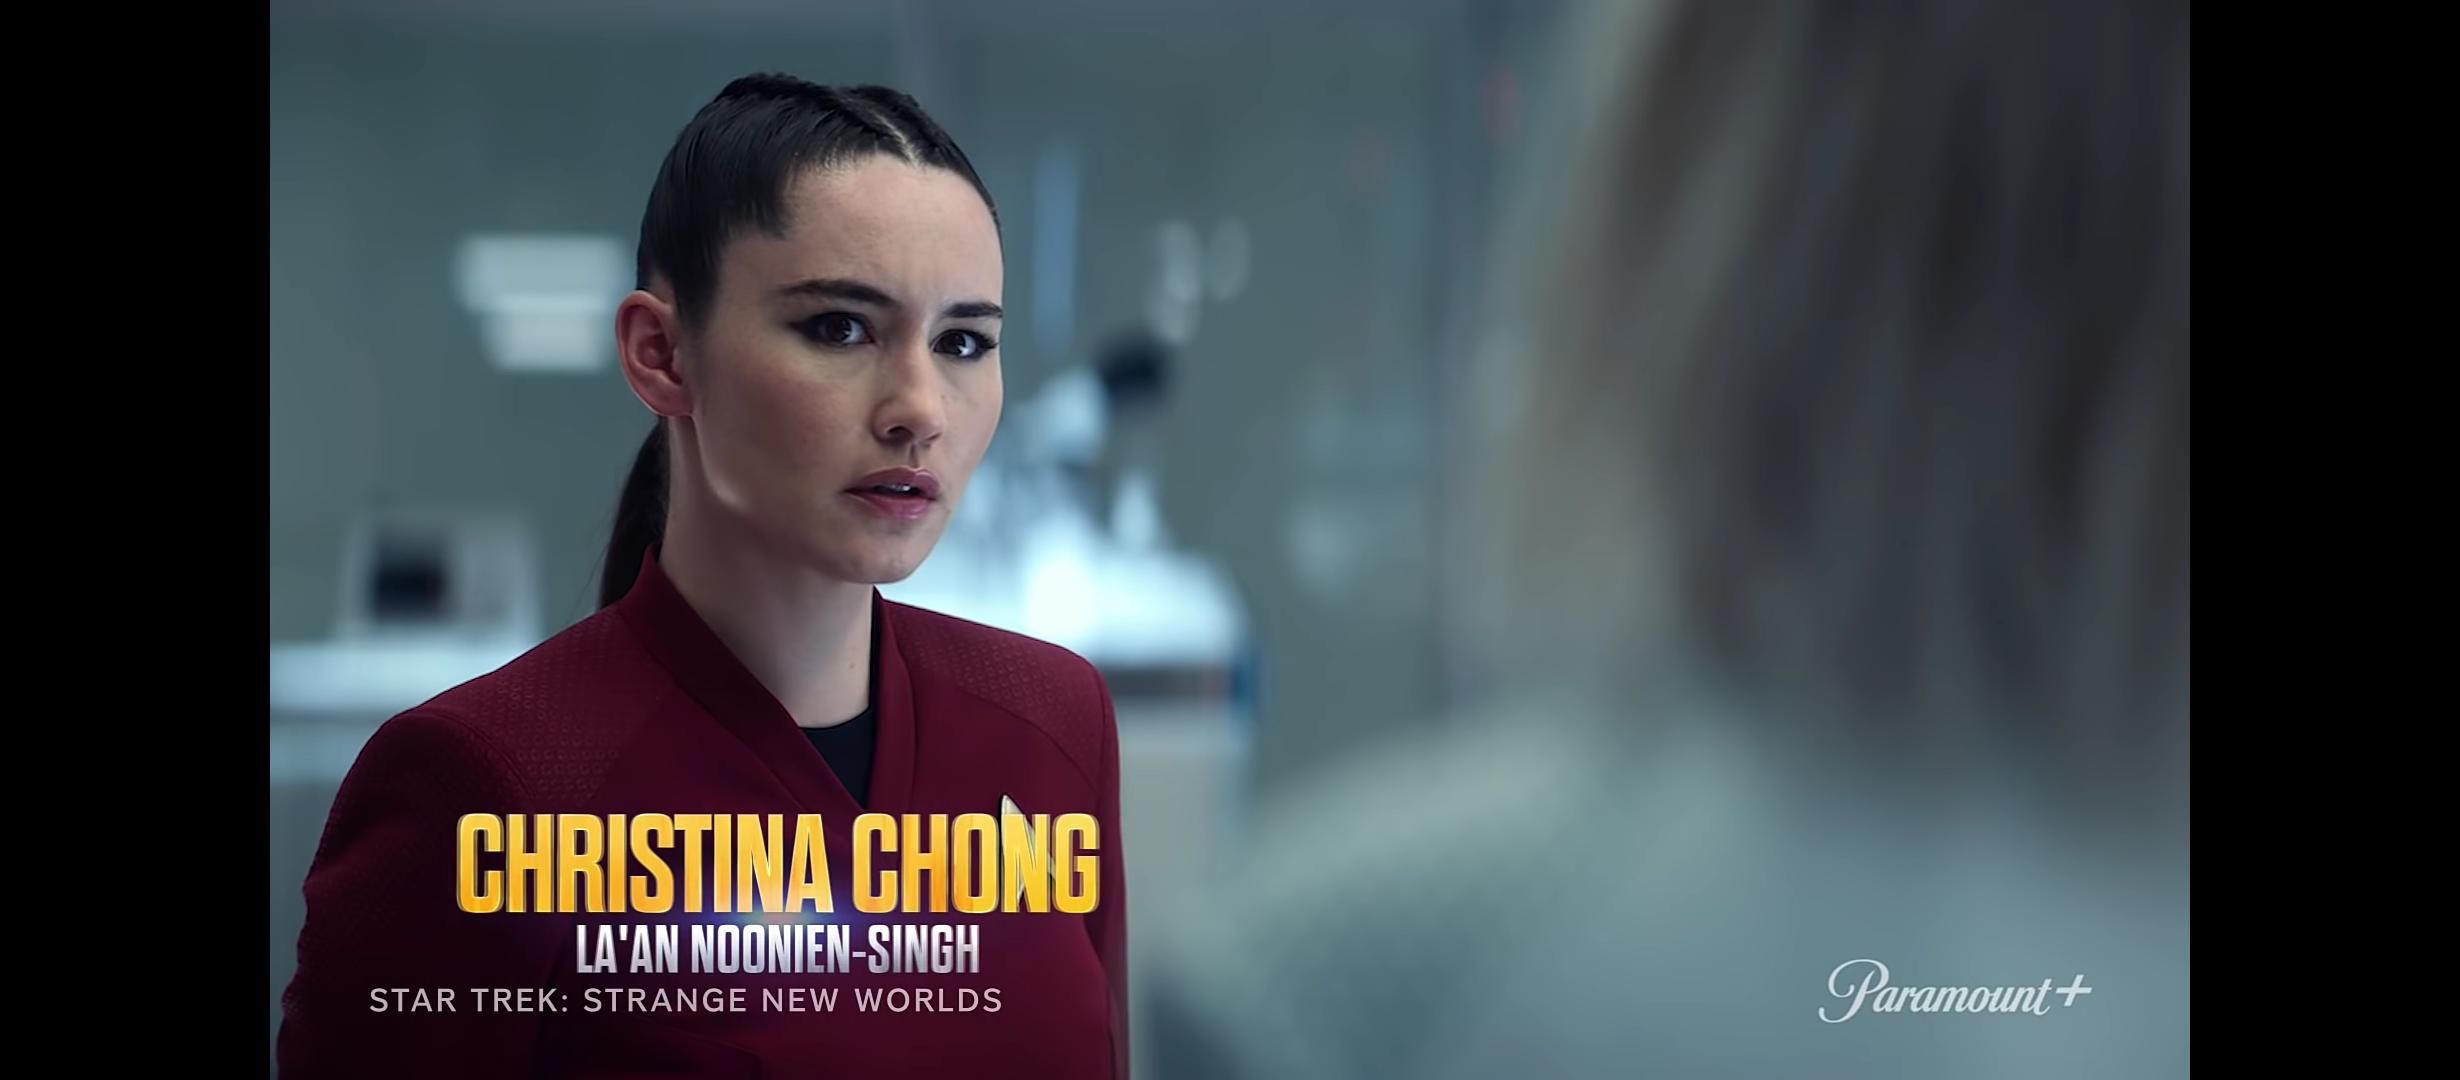 Christina Chong as La'an Noonien-Singh